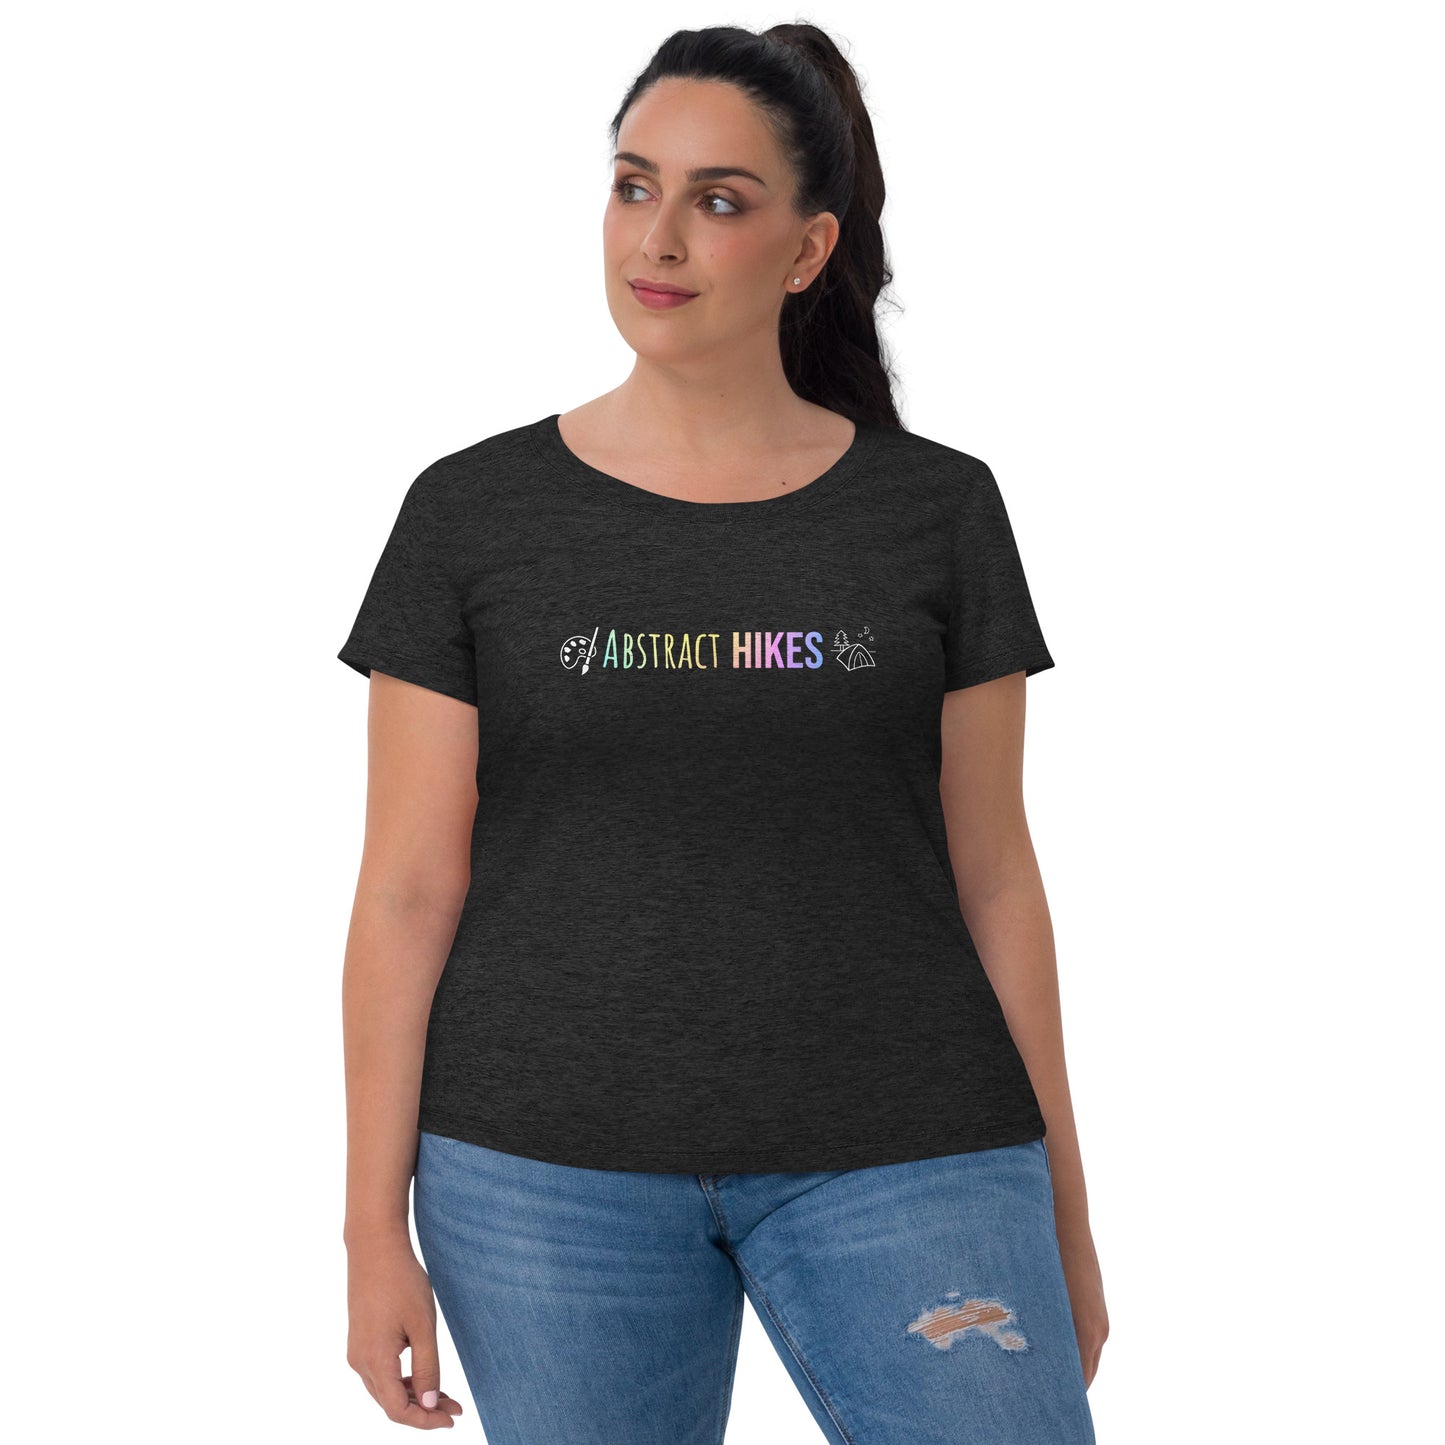 Appalachian Trail Women's T-shirt